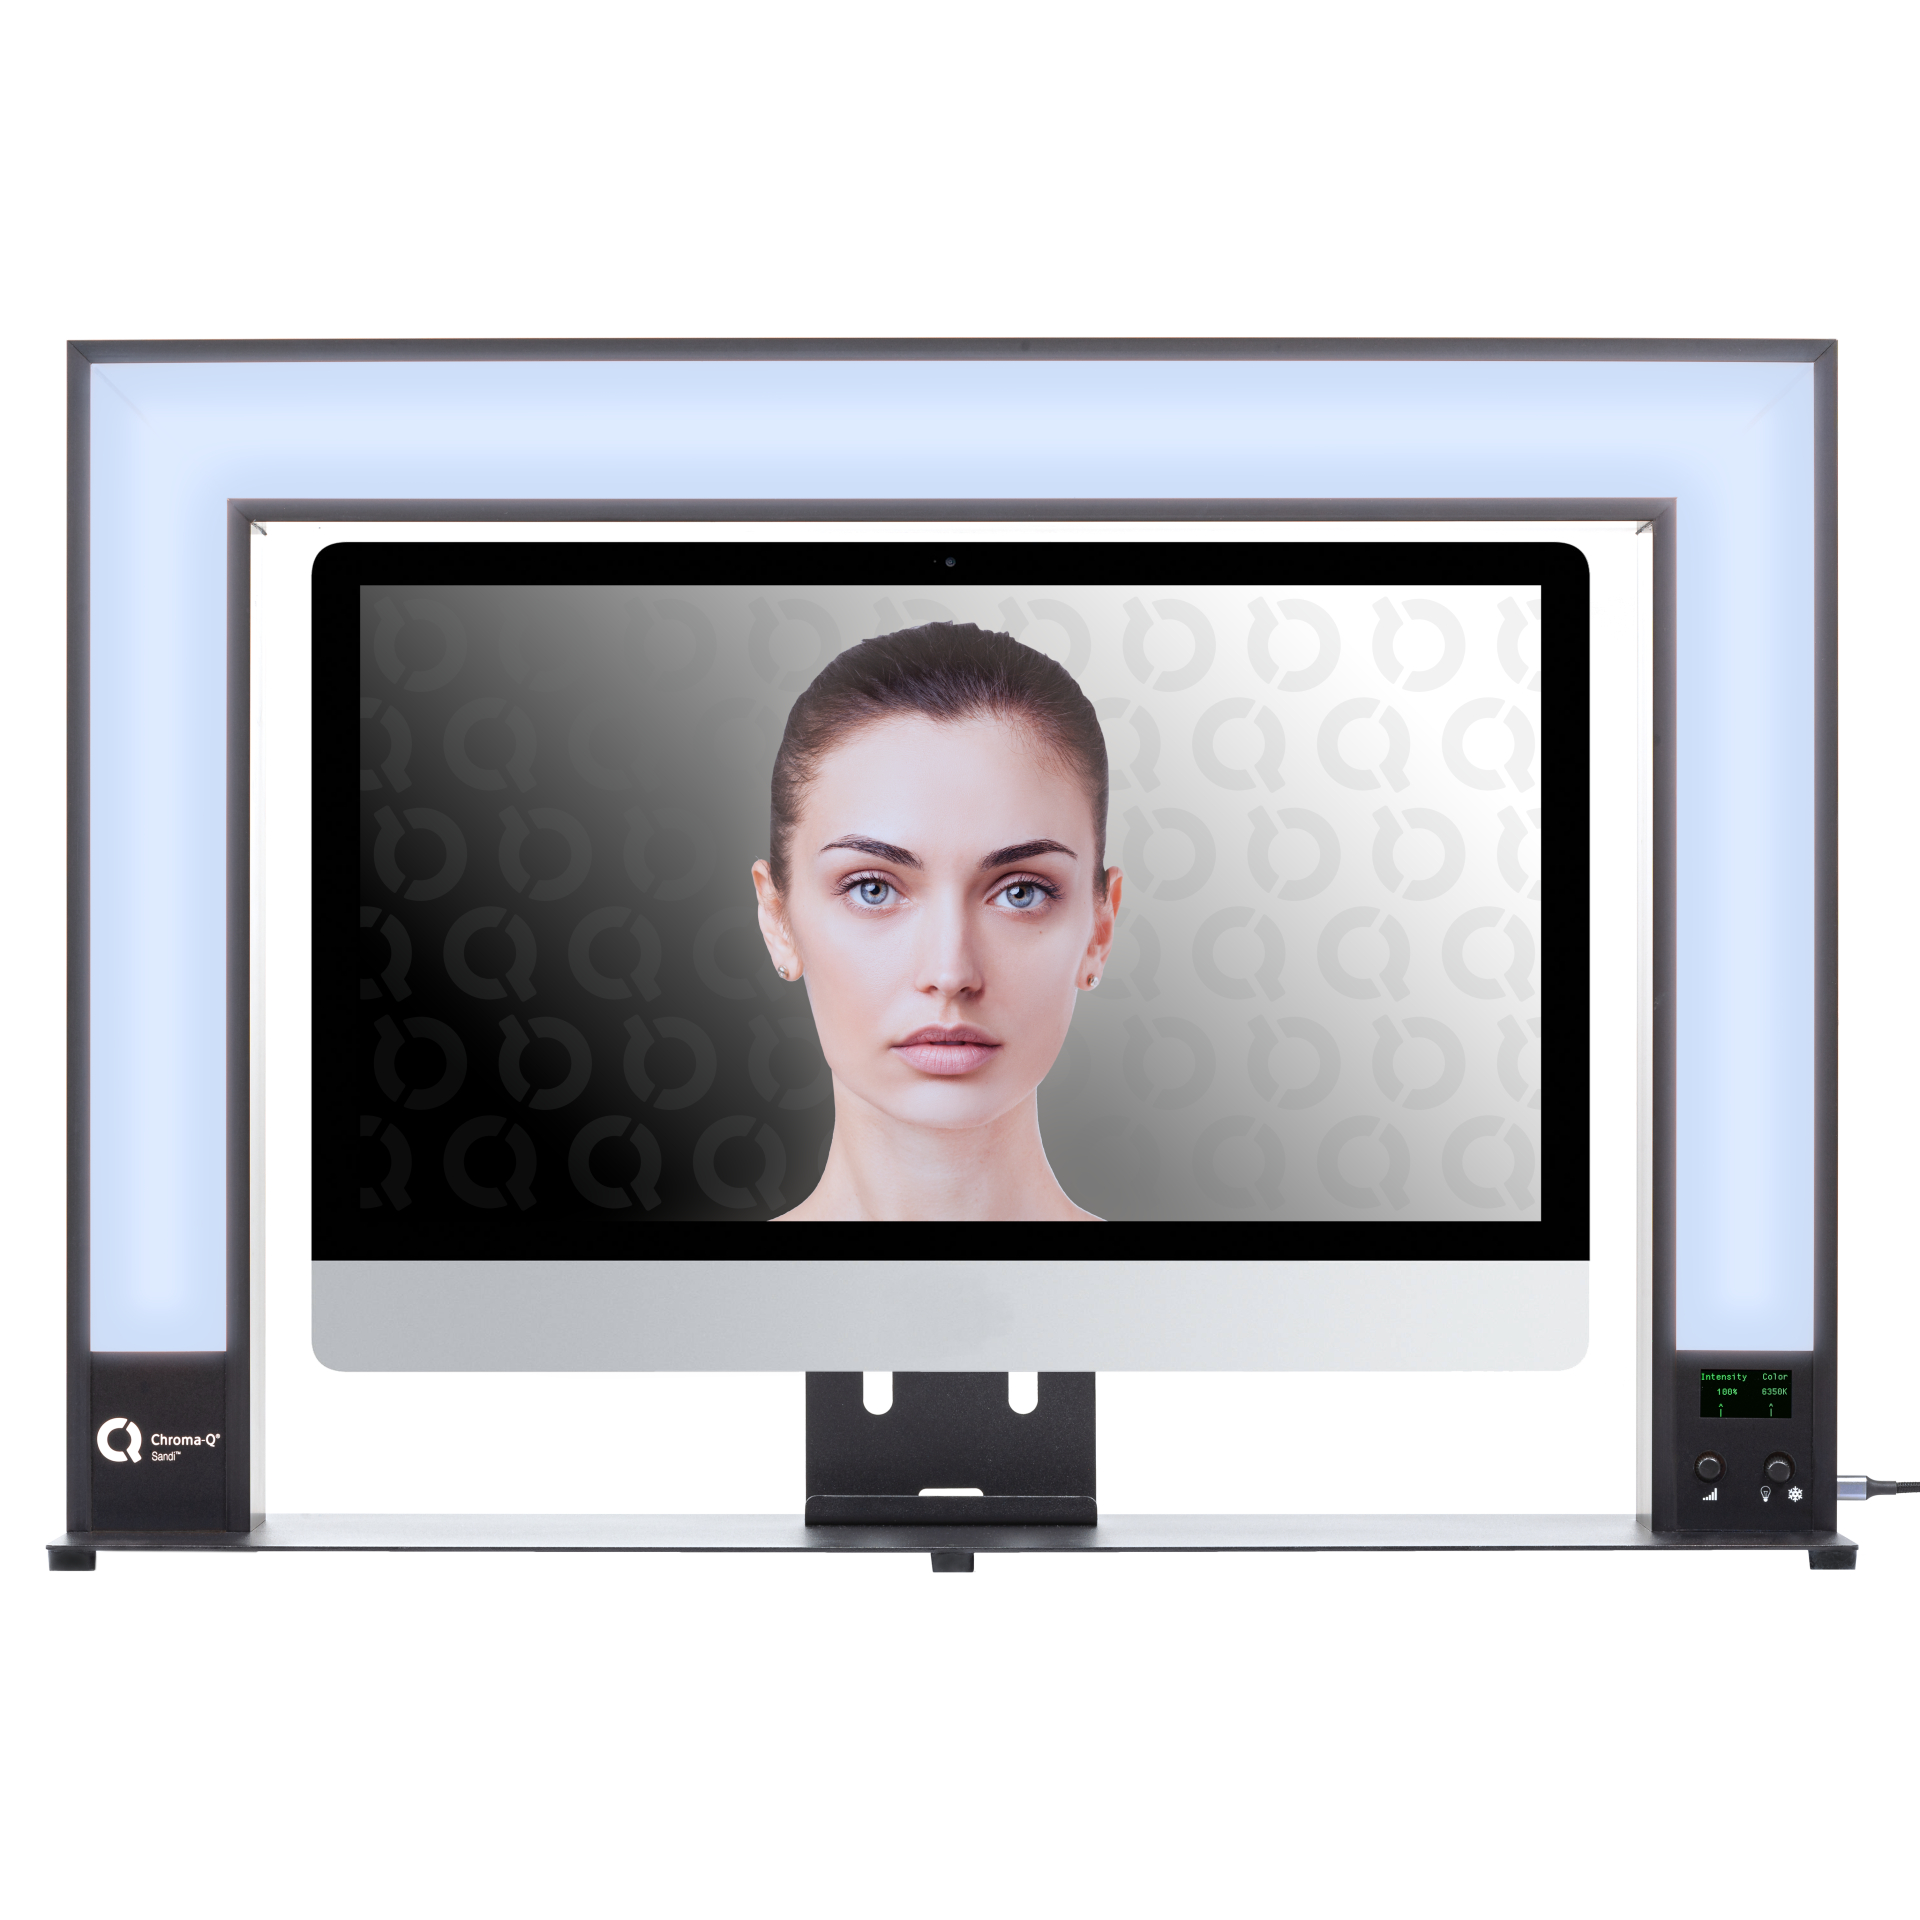 Chroma-Q Sandi - Cold white light with monitor